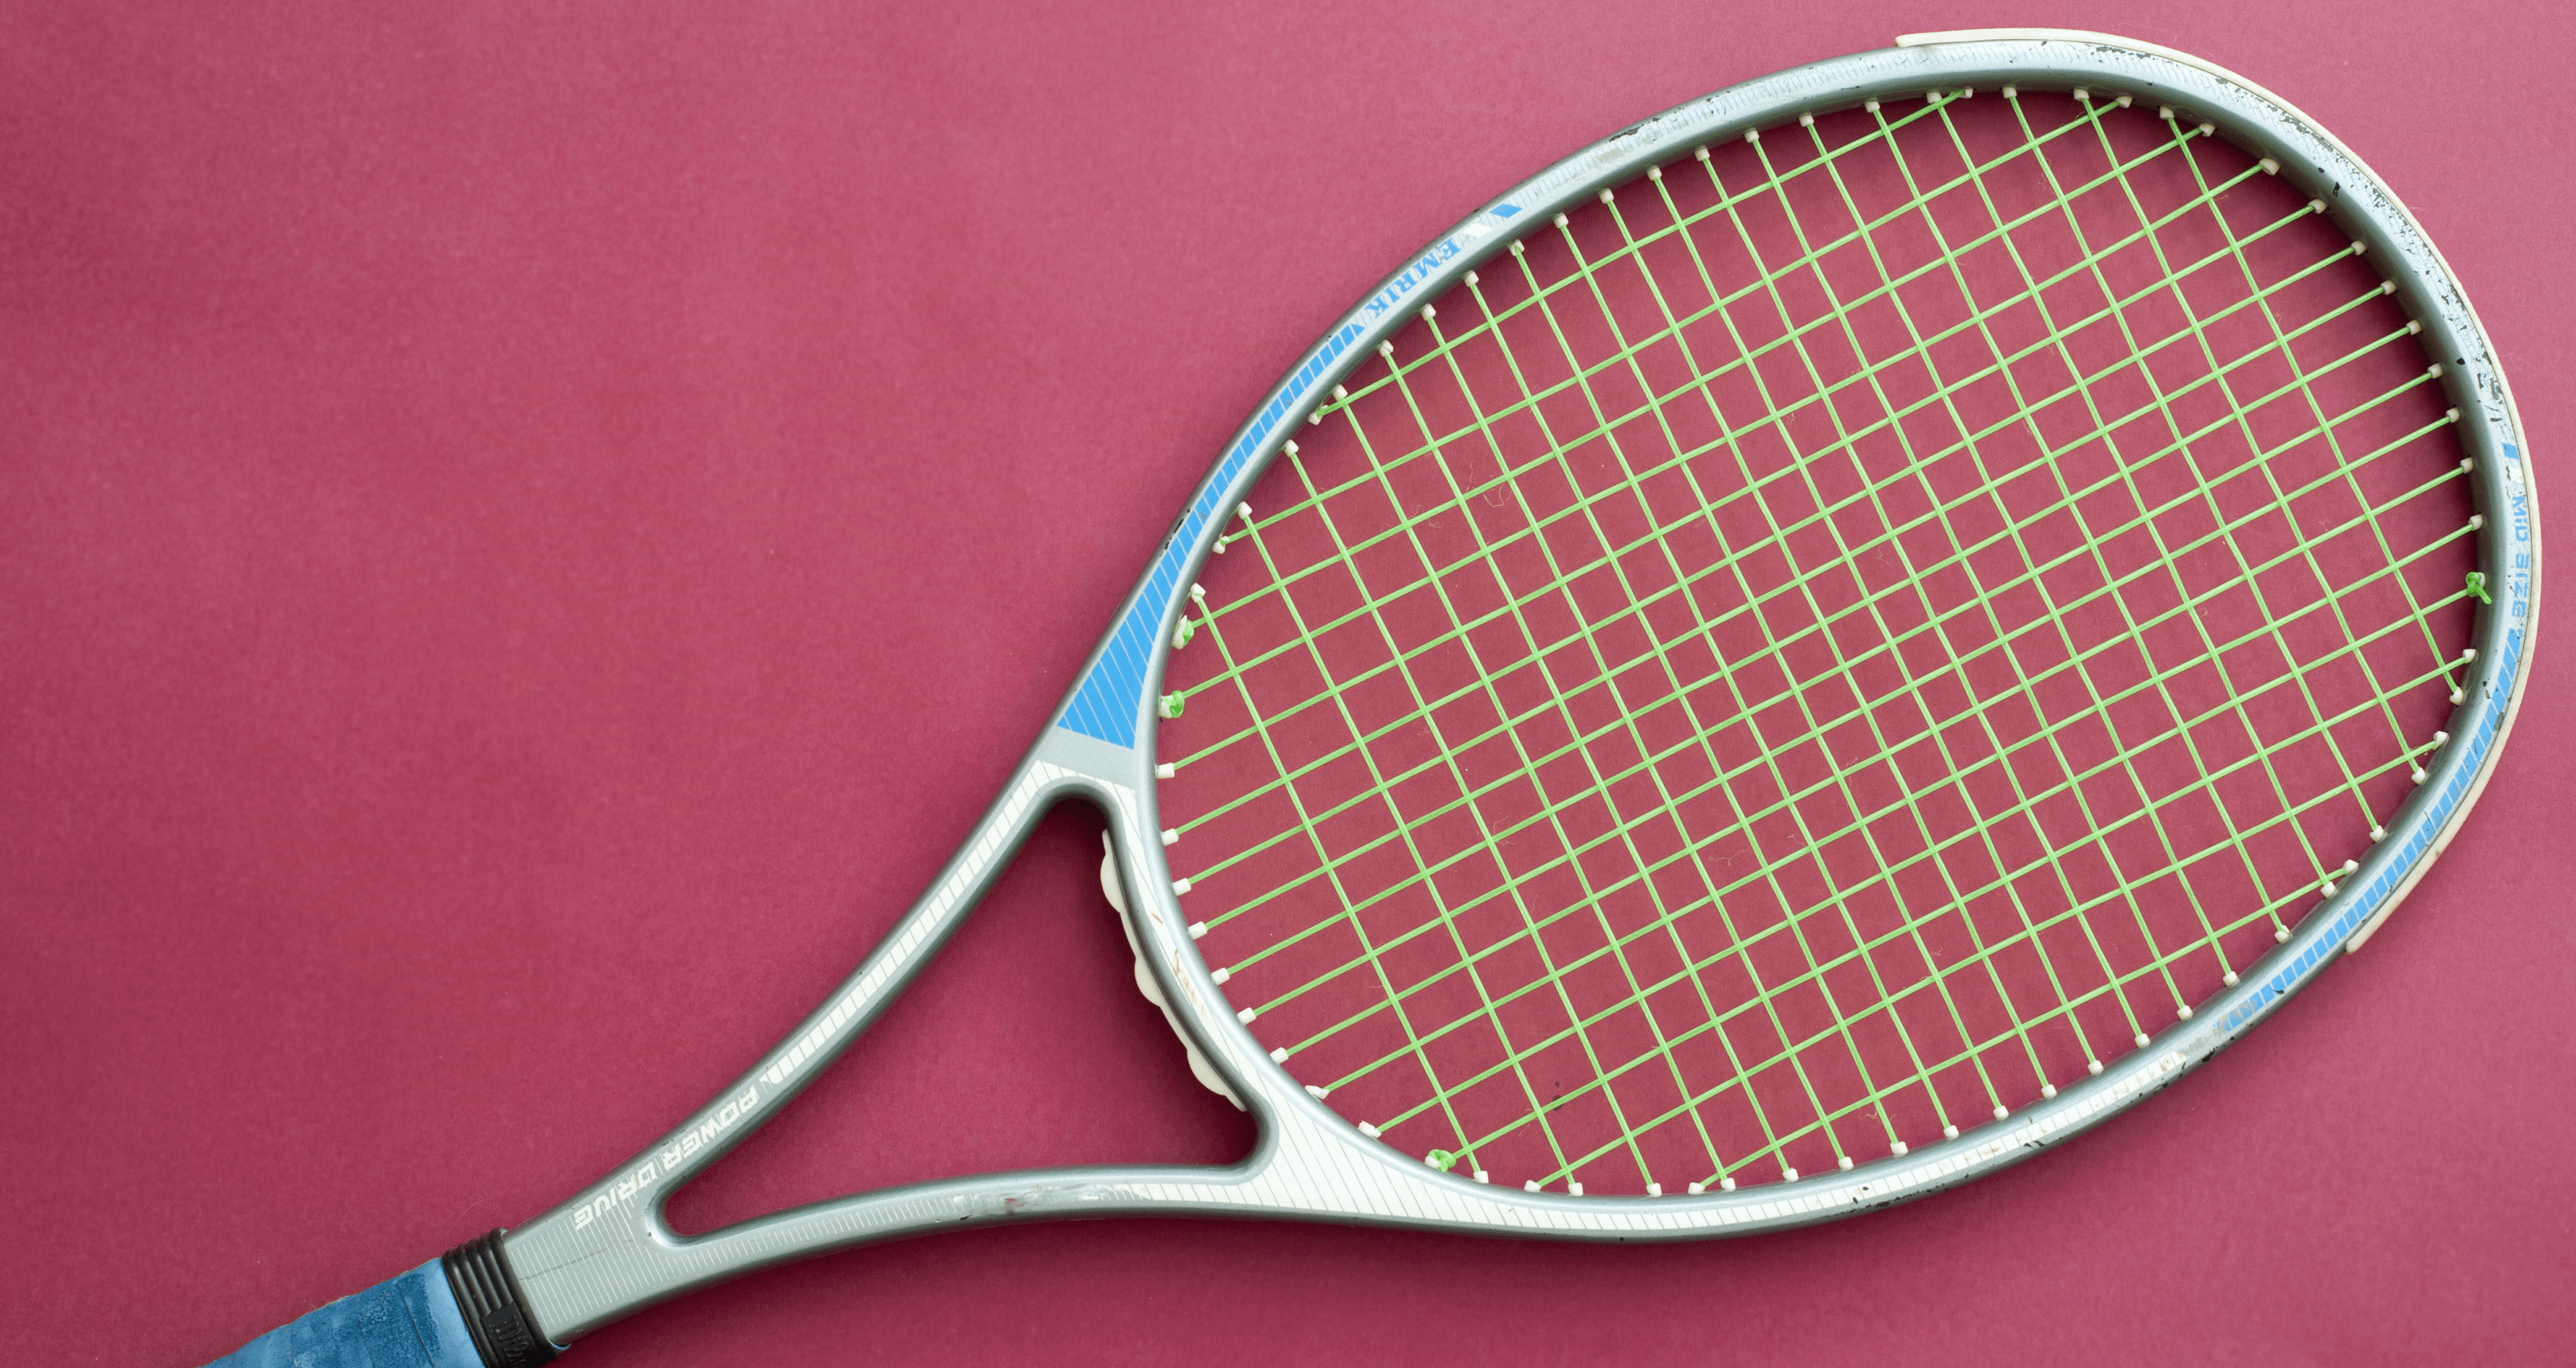 Tenis Kortları | Efor Spor Sistemleri ve Branda Tente